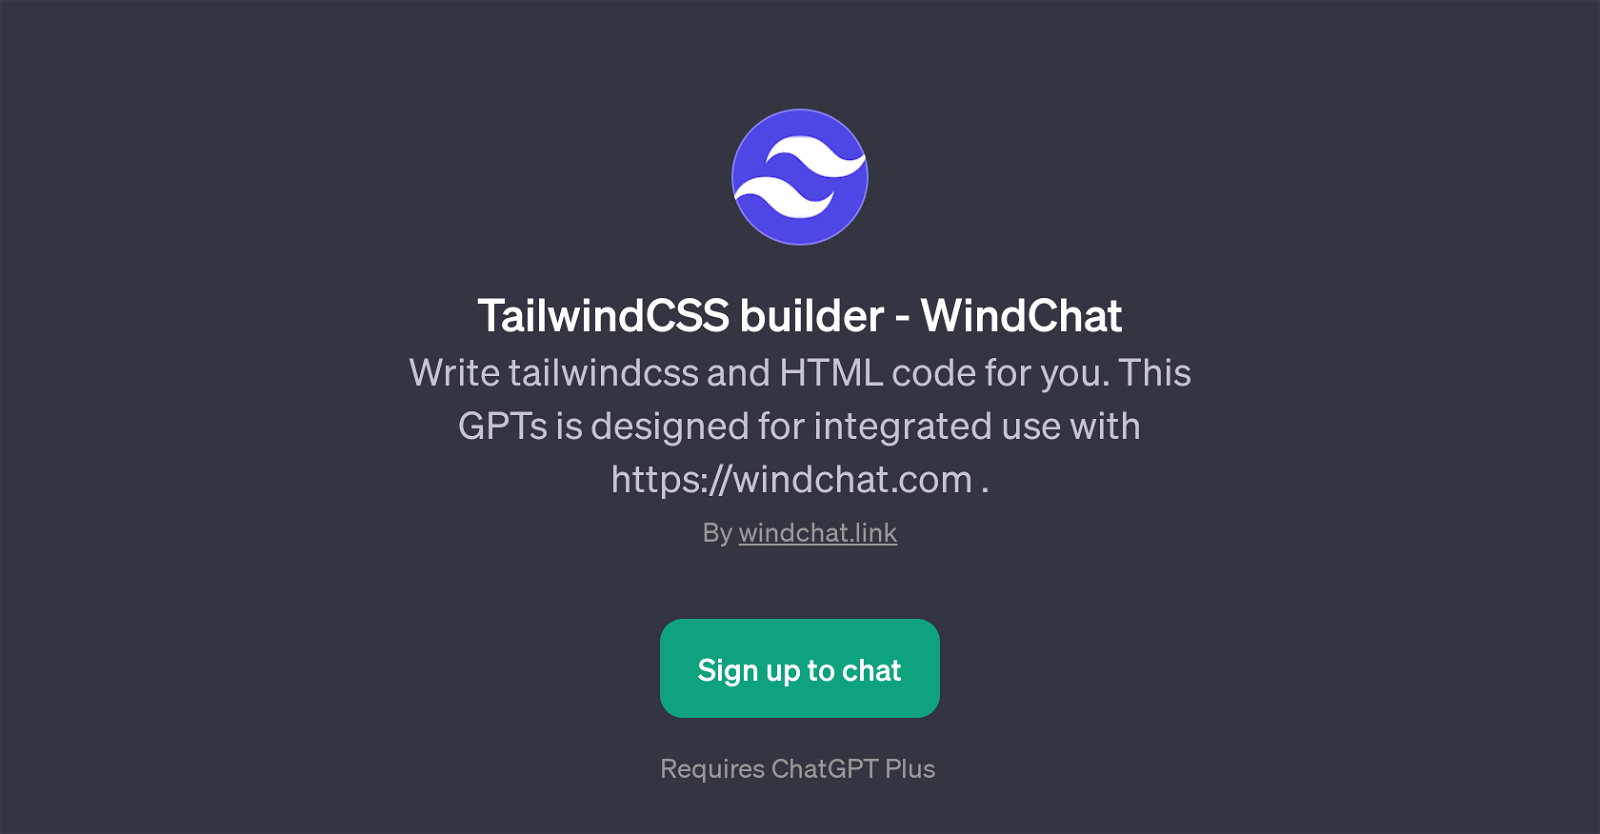 WindChat - TailwindCSS Builder website